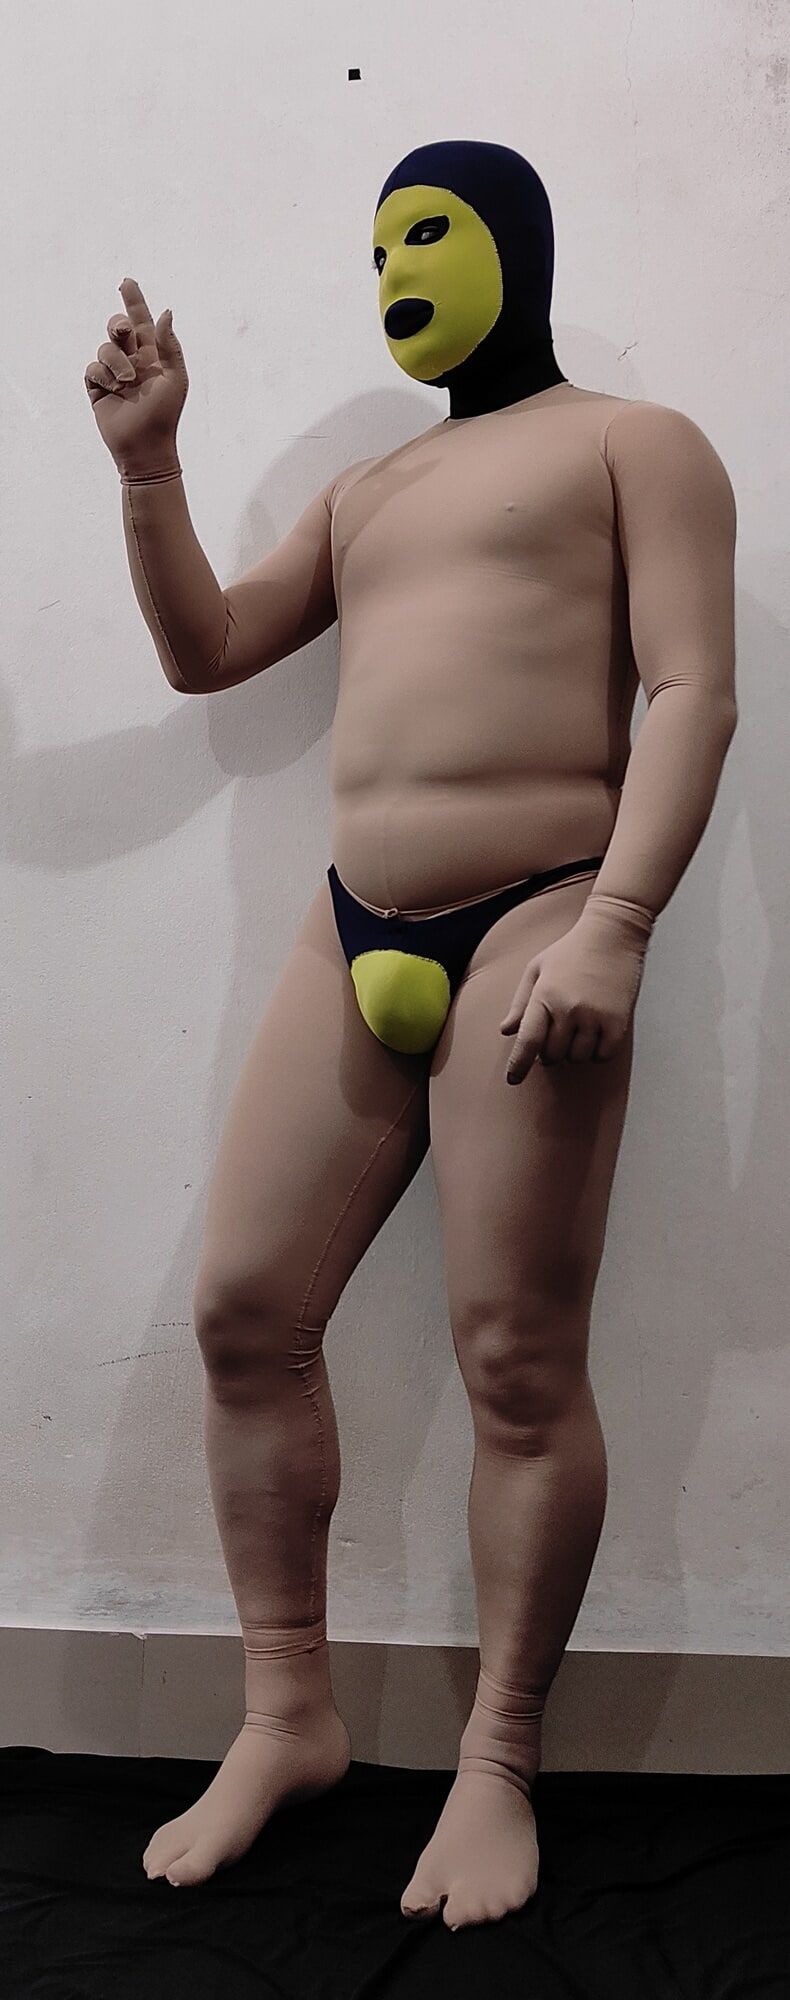 Zentai Circus penis play nude boy #3